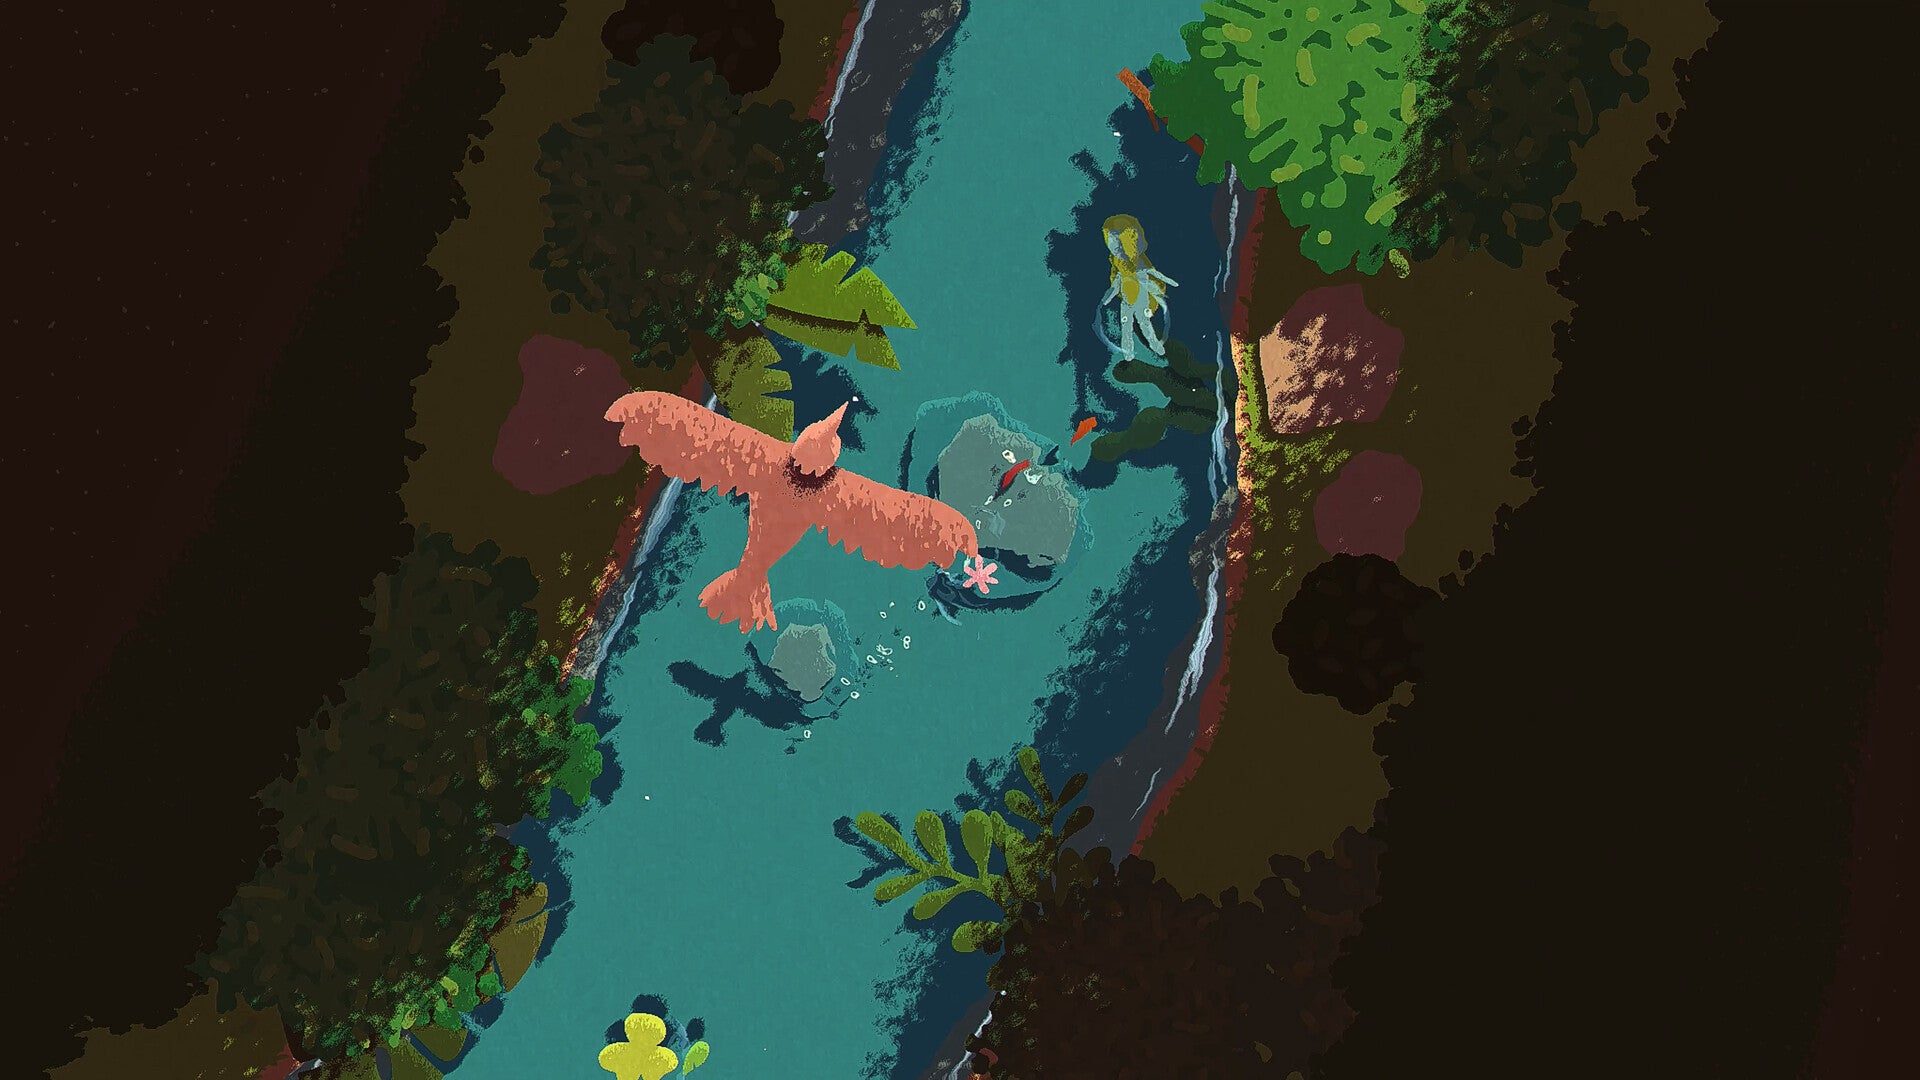 印象派的Naiad。从俯视的角度看，一个类似美人鱼的角色正在背游泳顺着溪流游动，两边是树丛和灌木，一只鸟从上方干扰我们的视线。温暖柔和的颜色让这个图像非常令人愉悦。